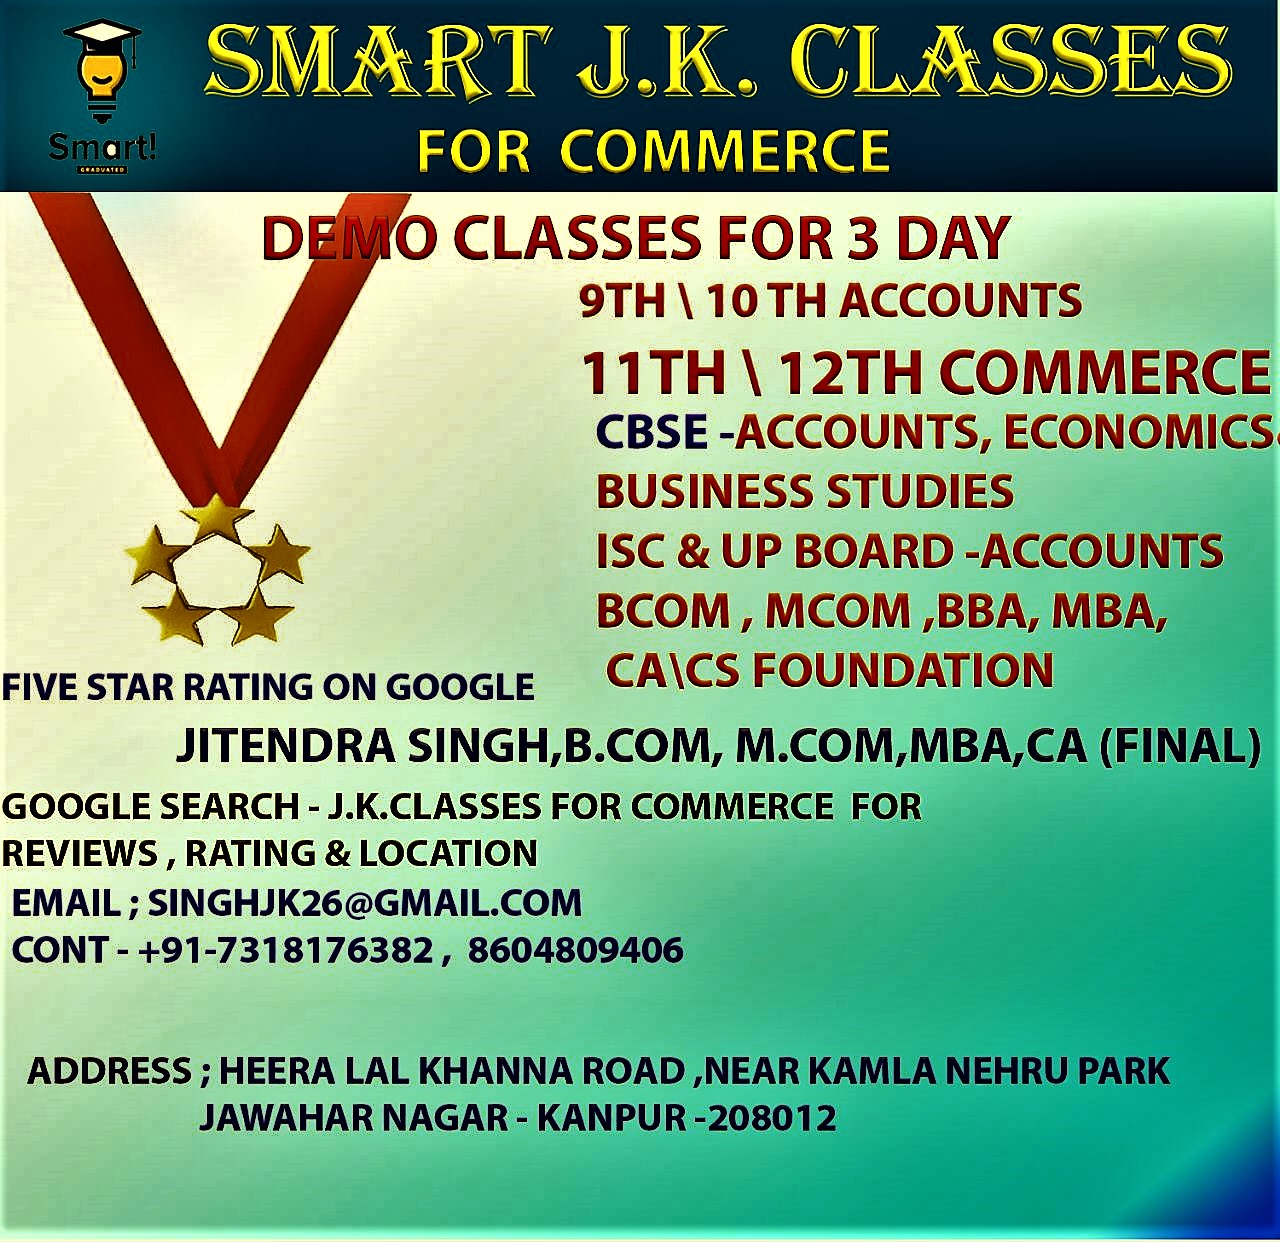 24101SMART J.K.CLASSES FOR COMMERCE
Accounts, Eco. BST
11th & 12th, B.Com, M.Com, BBA